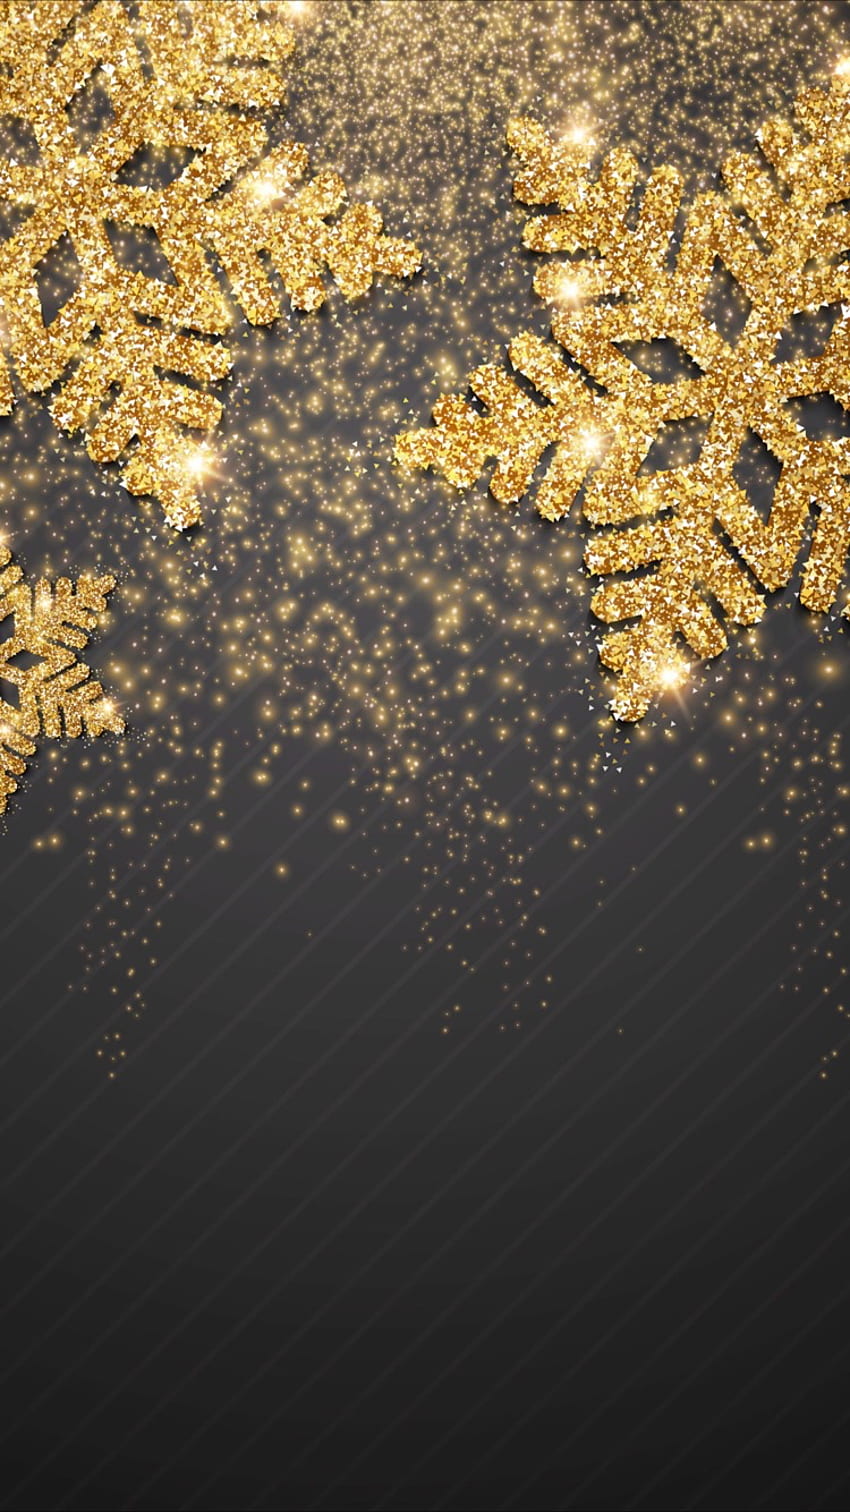 Dhuhaa Yusuf on مع تقدمك في السن ، علينا أن ندرس أكثر ونفهم الحياة ونكون شاكرين للأشياء الصغيرة. Holiday , Christmas , Xmas, Black and Gold Christmas HD phone wallpaper